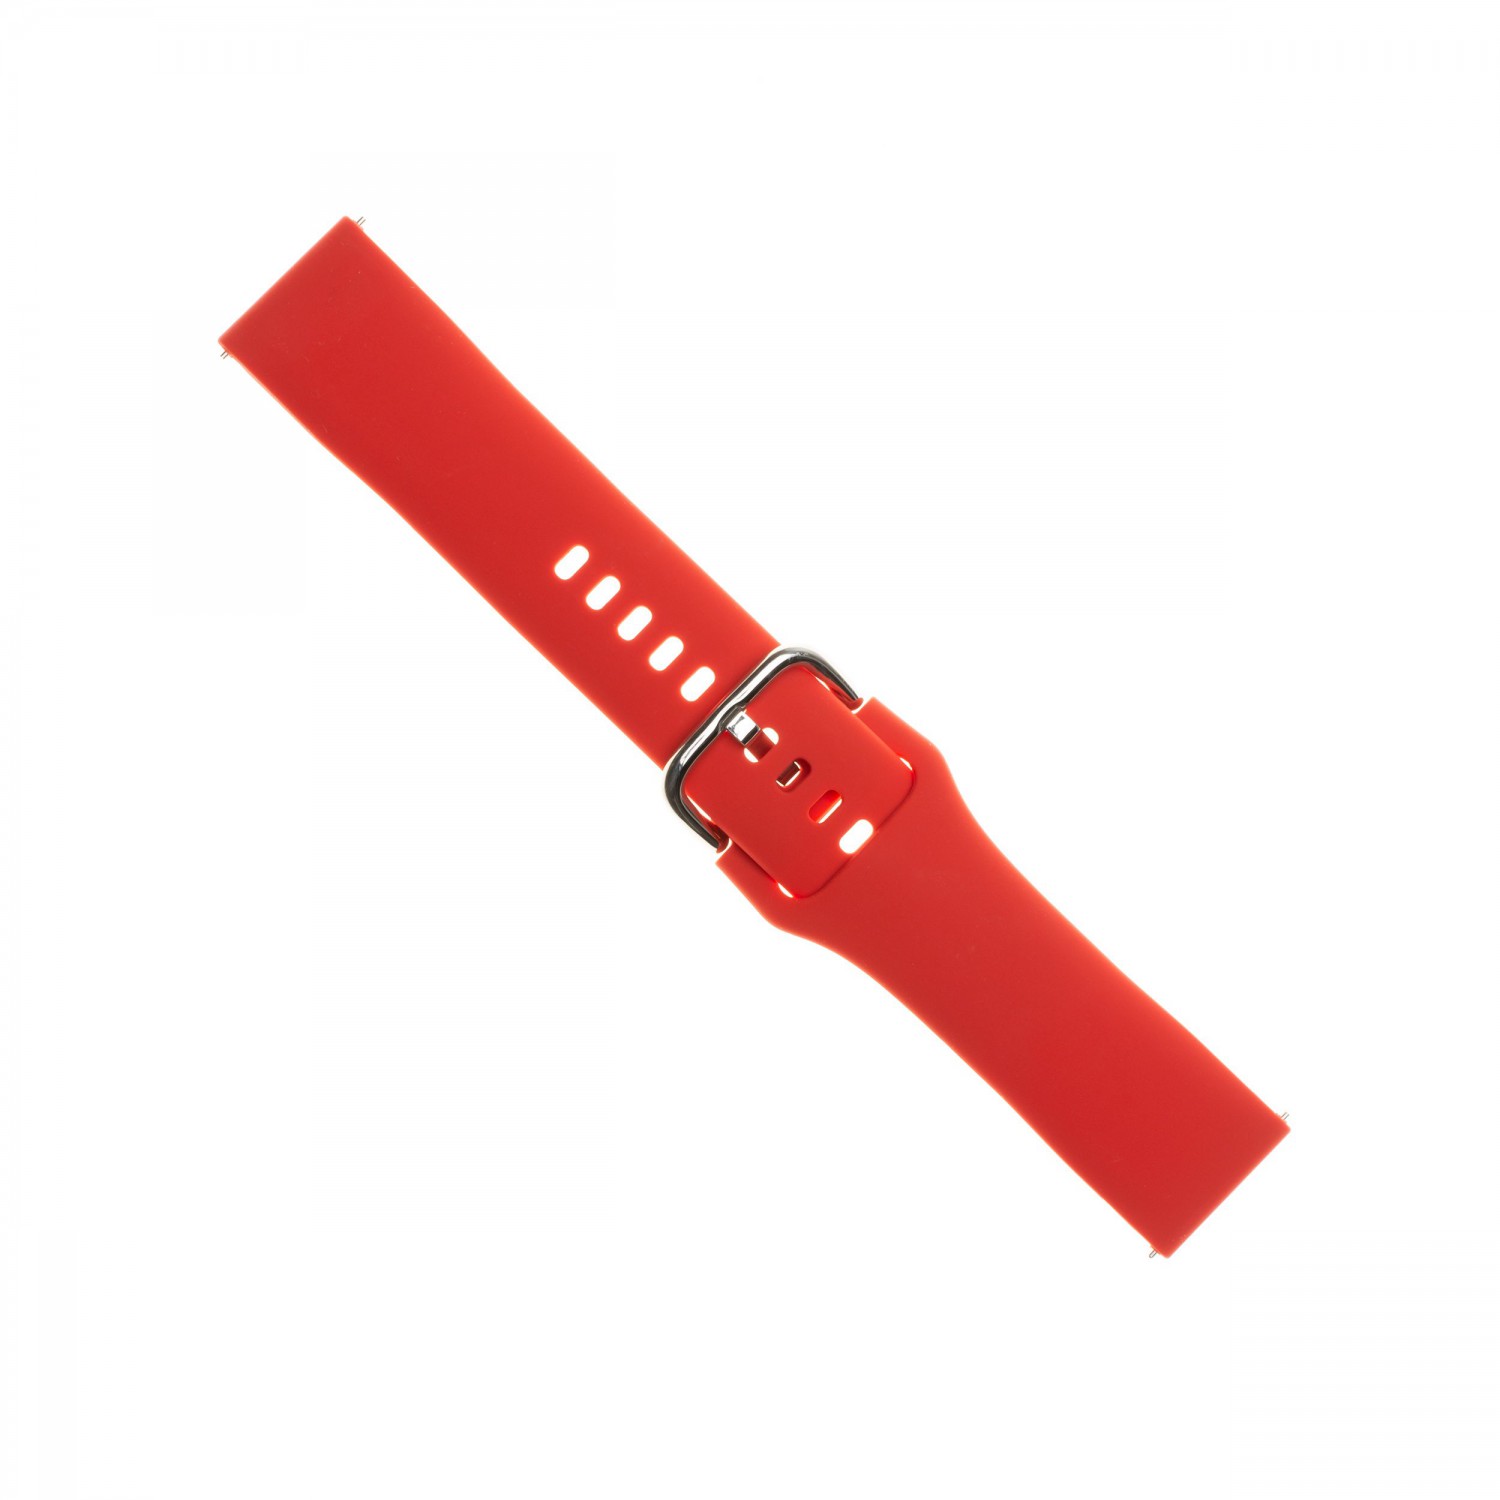 Silikonový řemínek FIXED Silicone Strap s šířkou 20mm pro smartwatch, červená